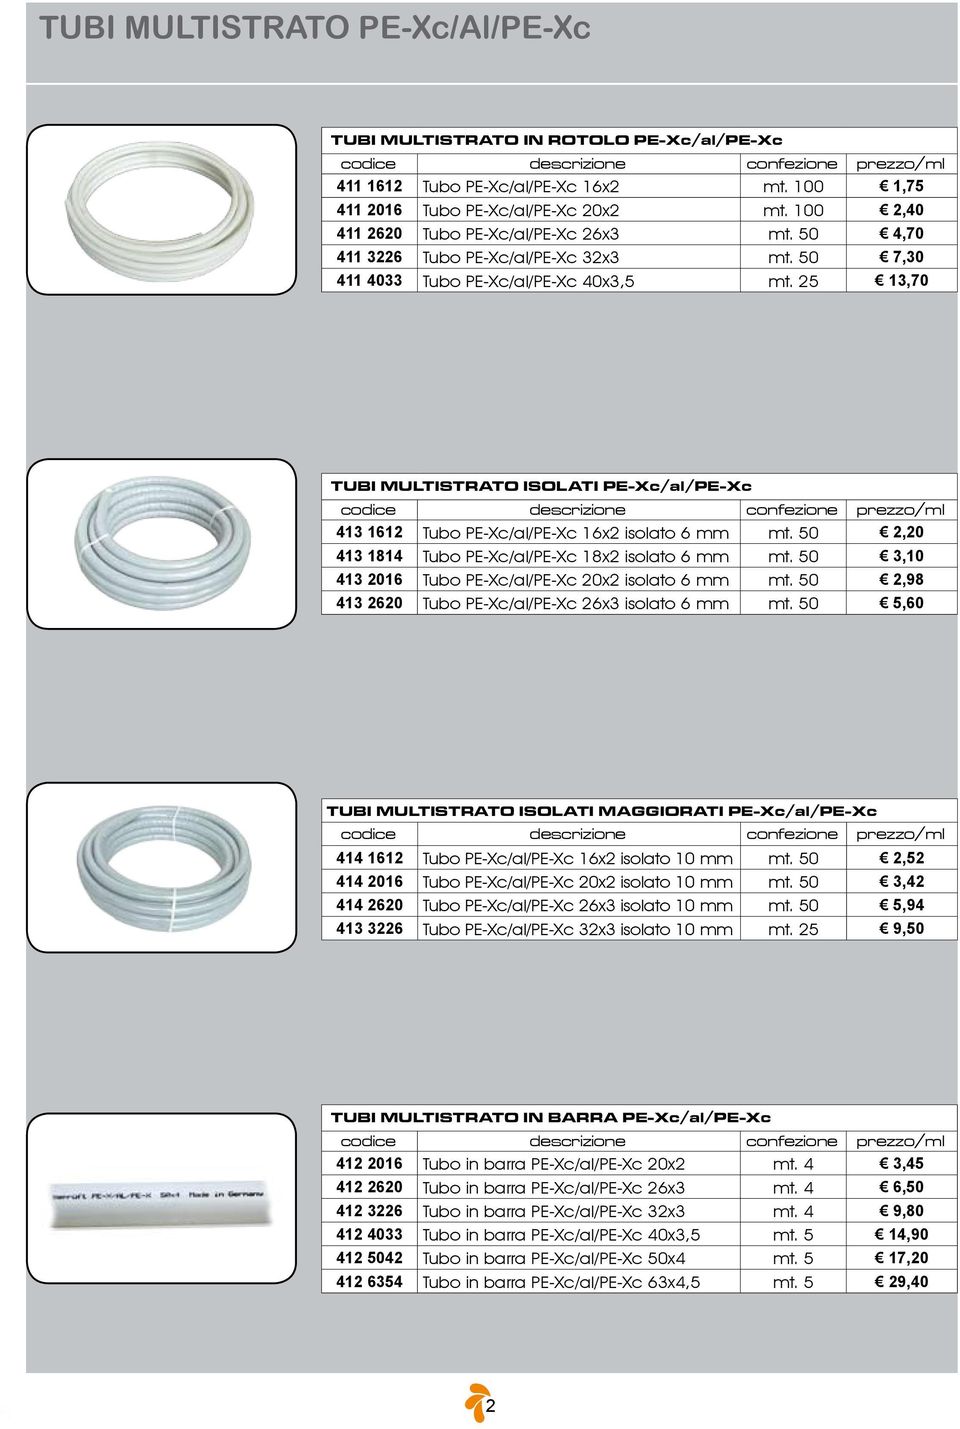 25 13,70 TUBI MULTISTRATO ISOLATI PE-Xc/al/PE-Xc codice descrizione confezione prezzo/ml 413 1612 Tubo PE-Xc/al/PE-Xc 16x2 isolato 6 mm mt. 50 2,20 413 1814 Tubo PE-Xc/al/PE-Xc 18x2 isolato 6 mm mt.